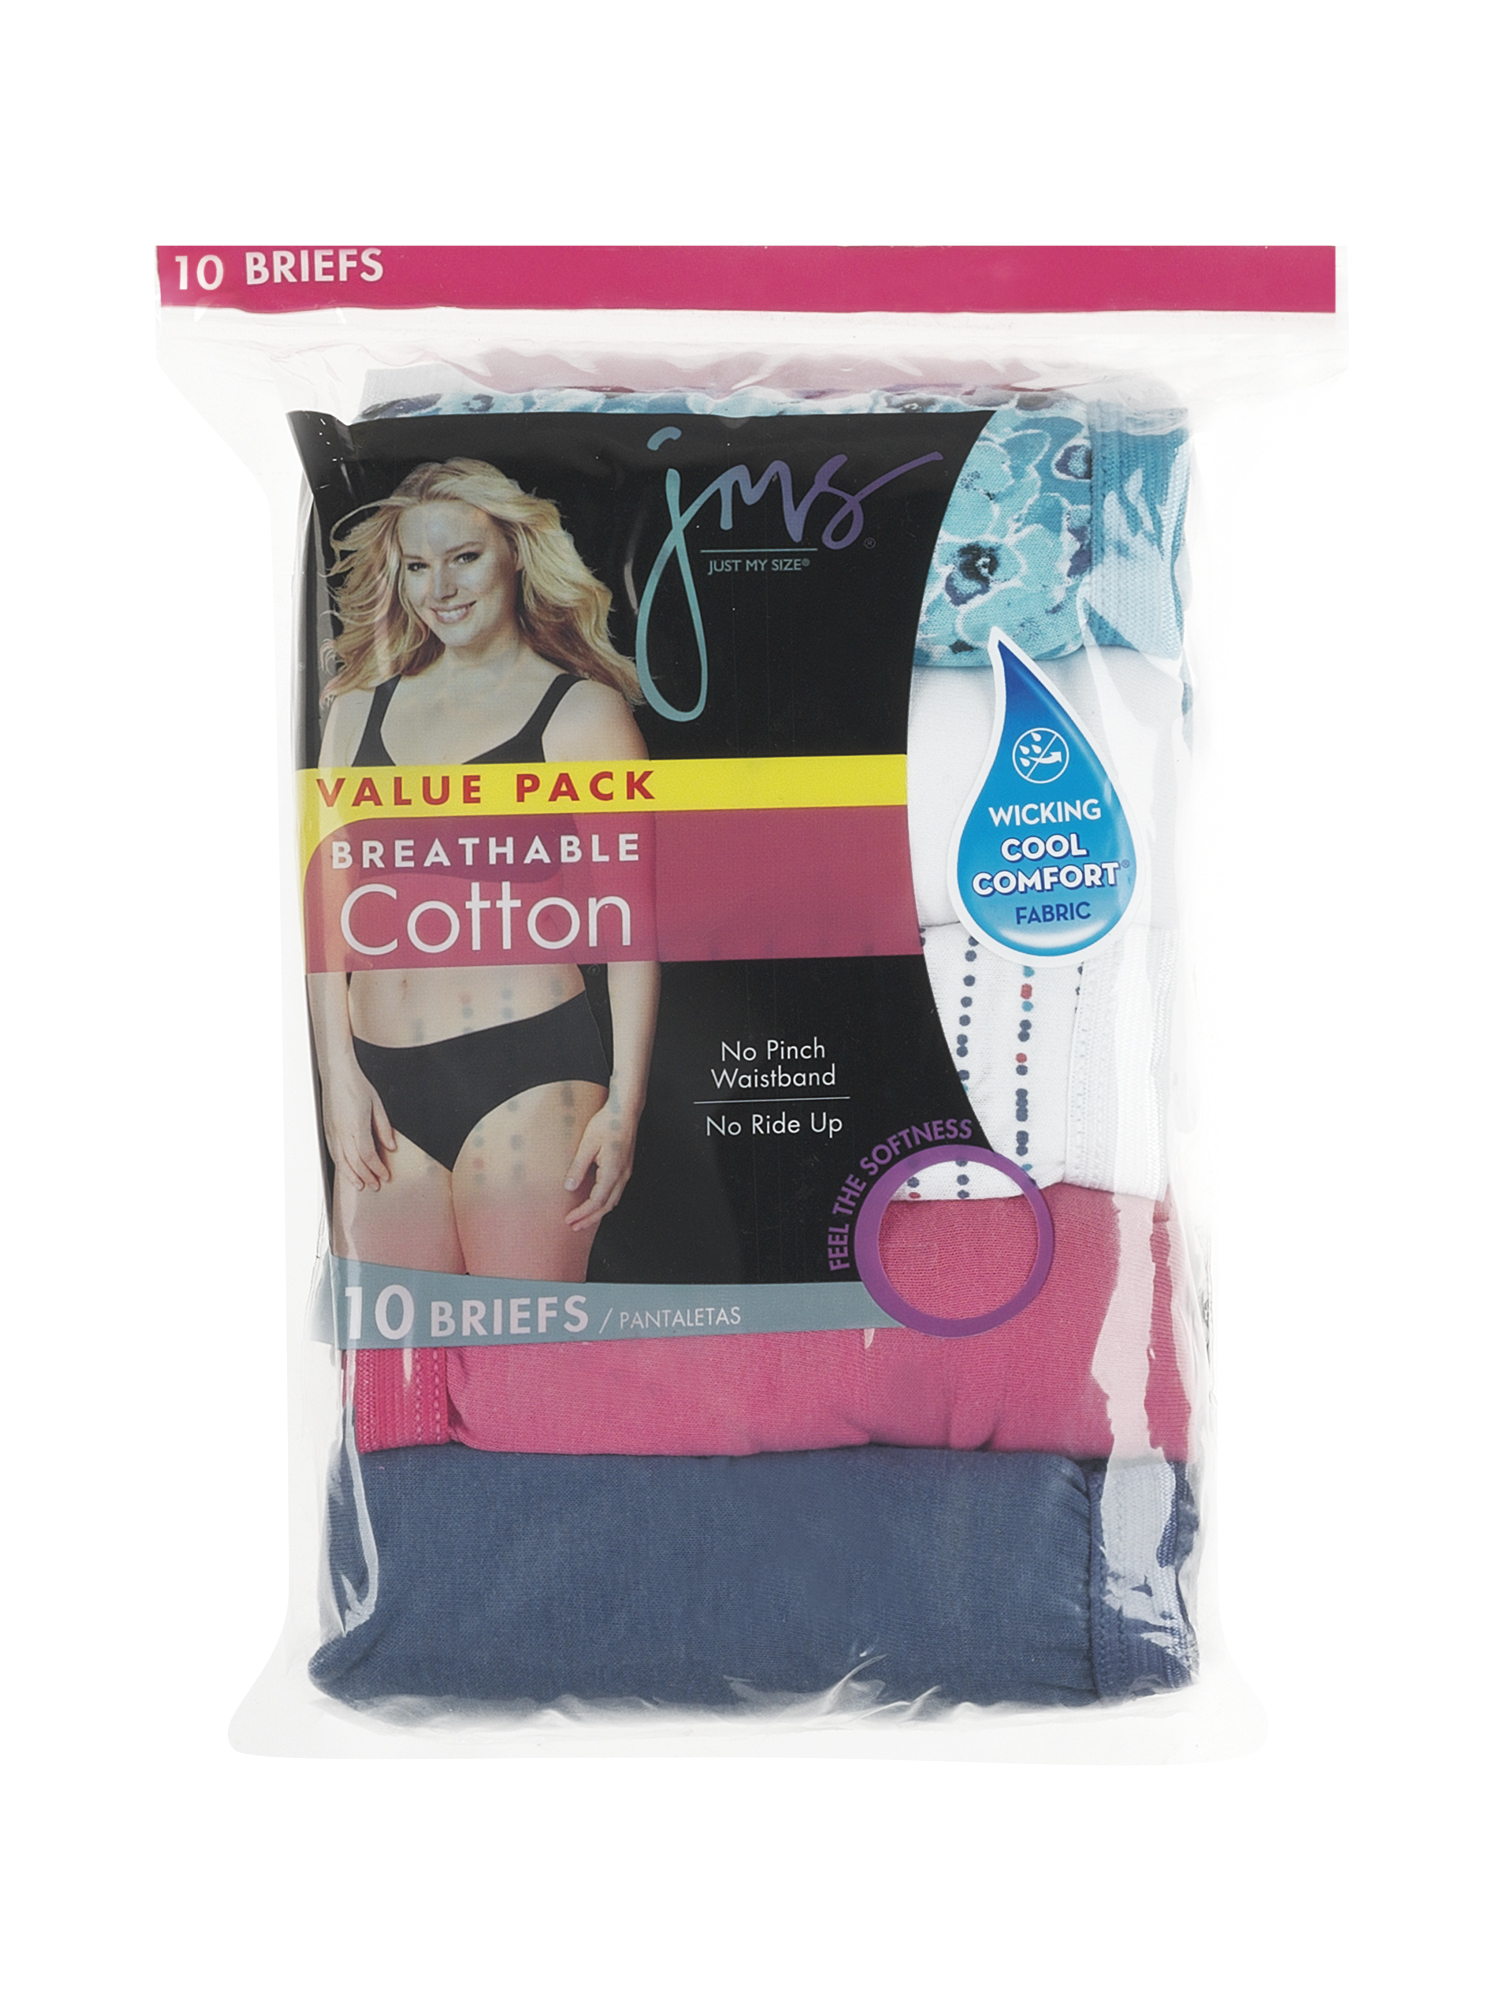 Just My Size Women's Cotton Brief Underwear, 10-Pack - image 2 of 6